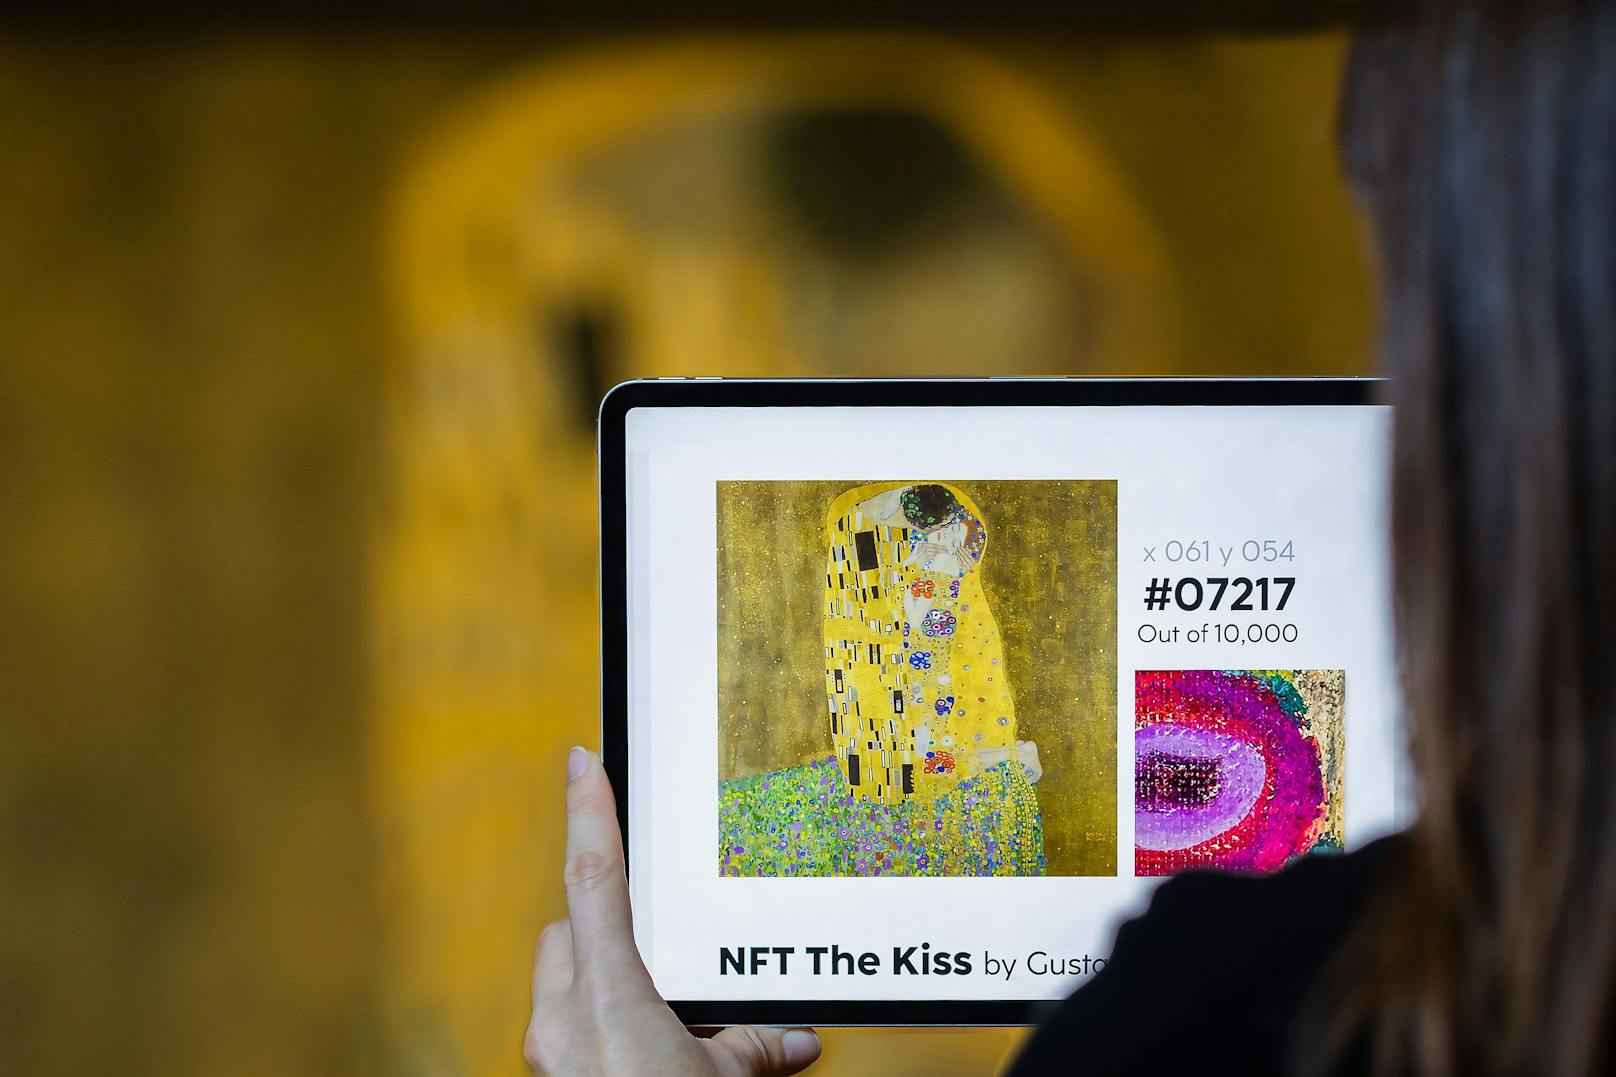 Das Belvedere verkauft zum Valentinstag 10.000 einzigartige digitale Ausschnitte des Klimt-Kunstwerks "Der Kuss".